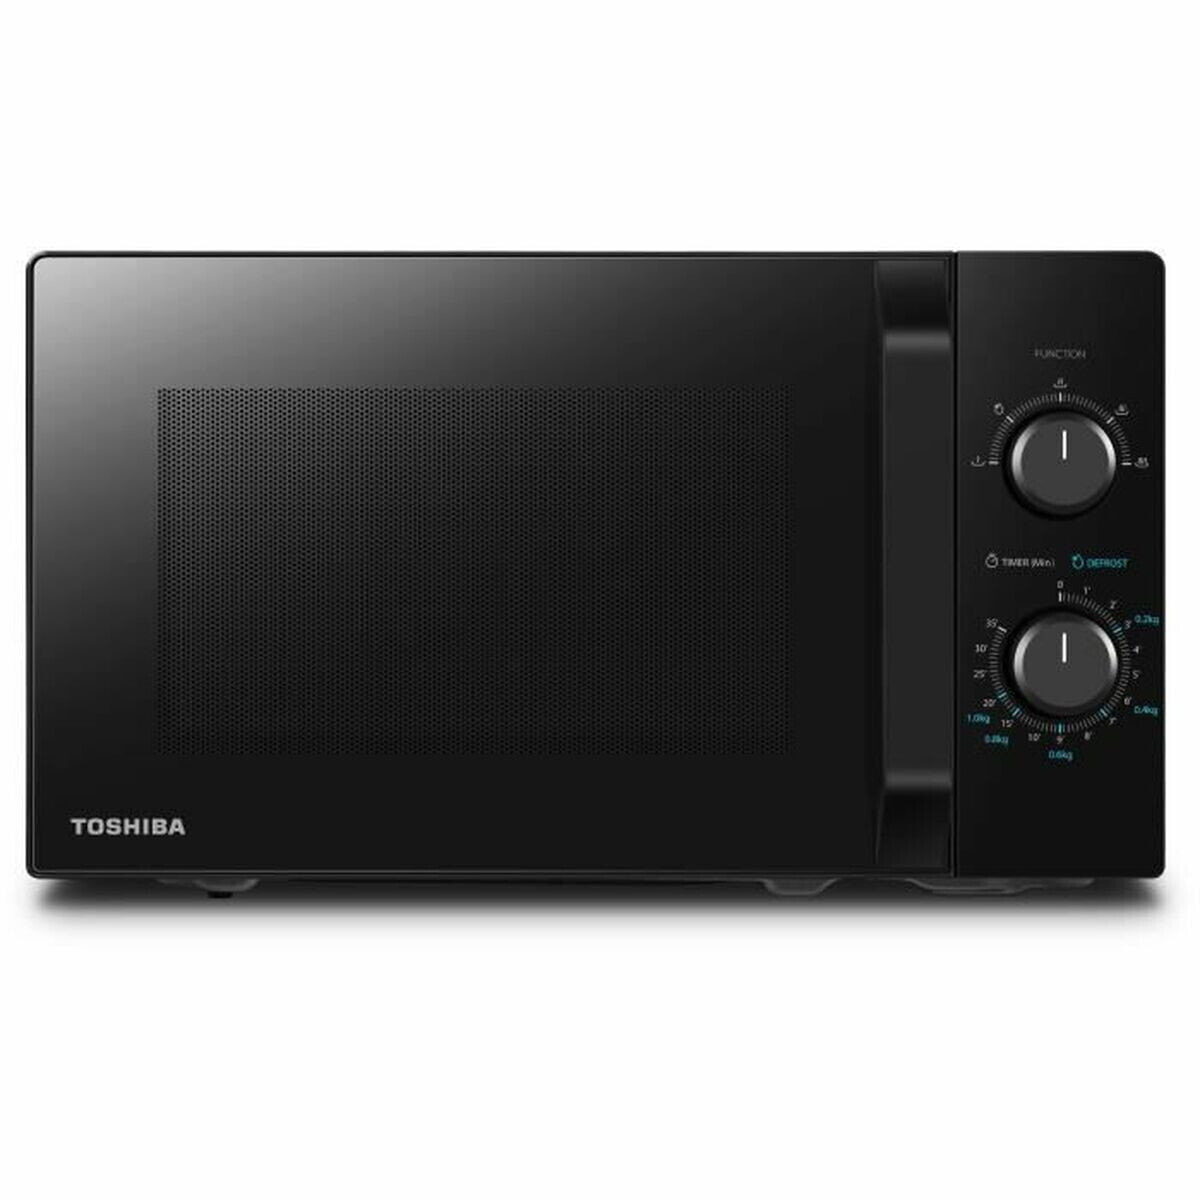 Microwave Toshiba 20 L 800 W Black 800 W 20 L